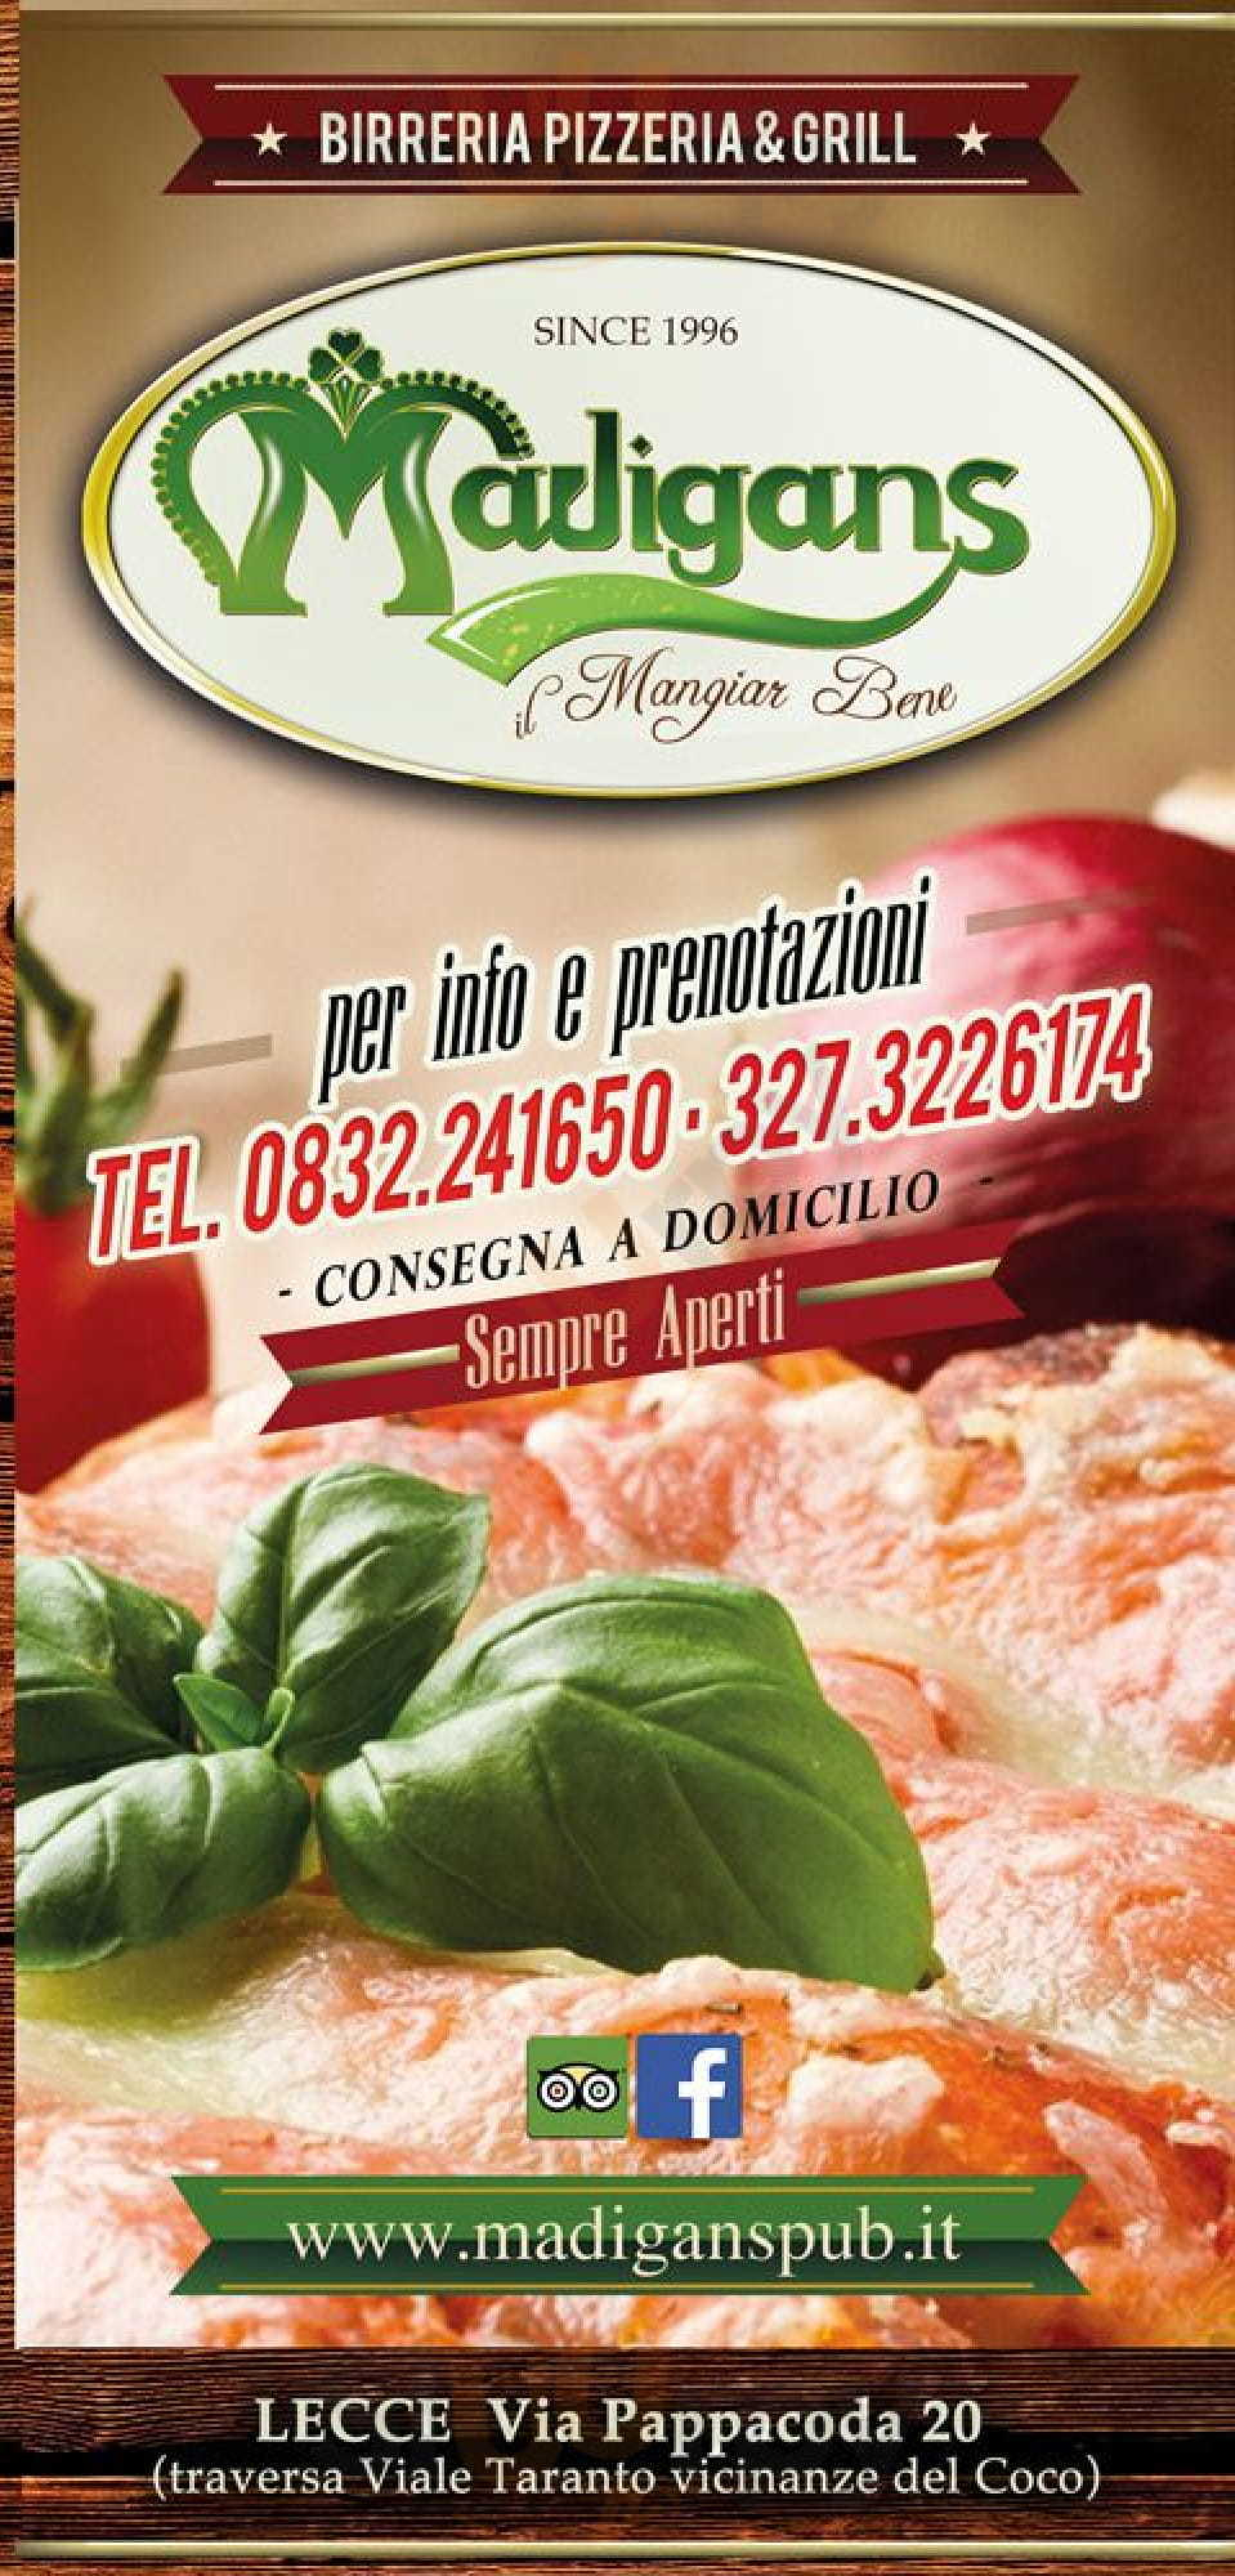 Madigans Pub - Restaurant - Grill Lecce menù 1 pagina